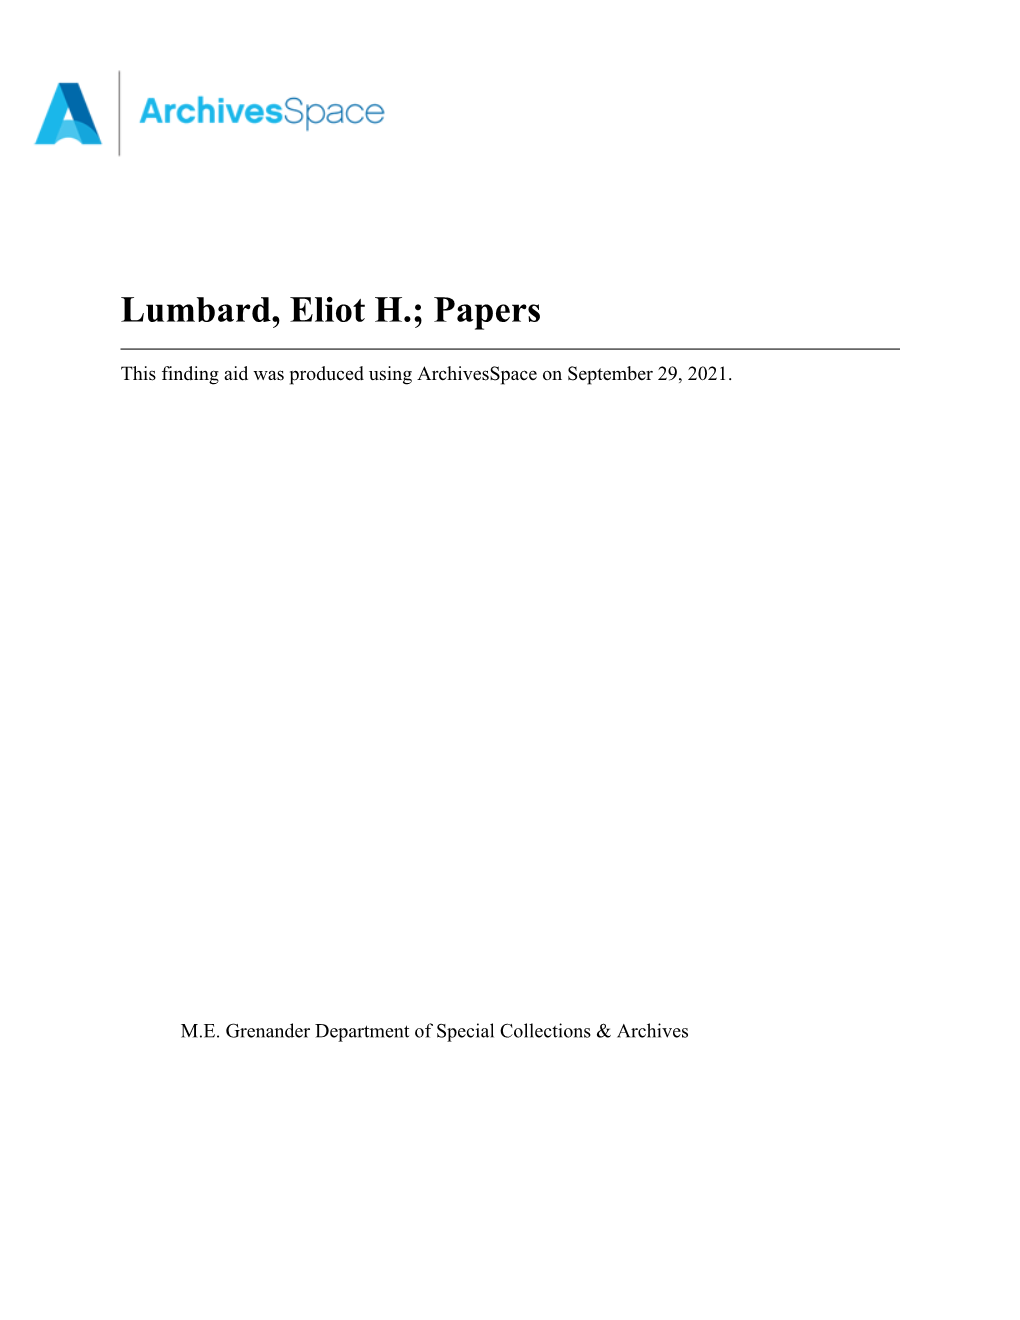 Lumbard, Eliot H.; Papers Apap071